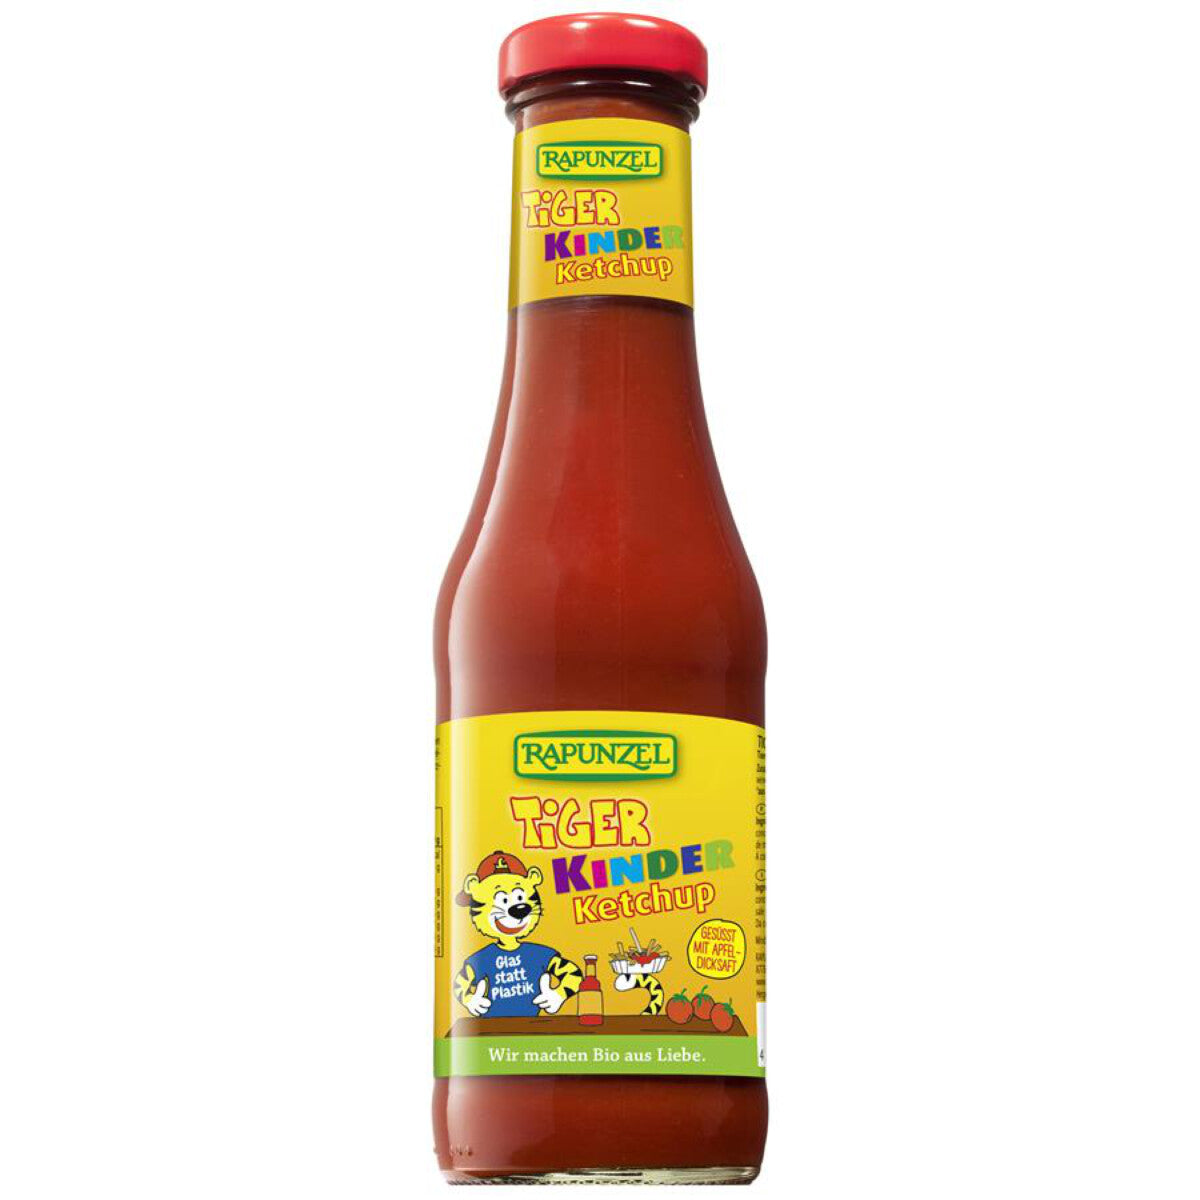 RAPUNZEL Tiger Kinder Ketchup - 450 ml 